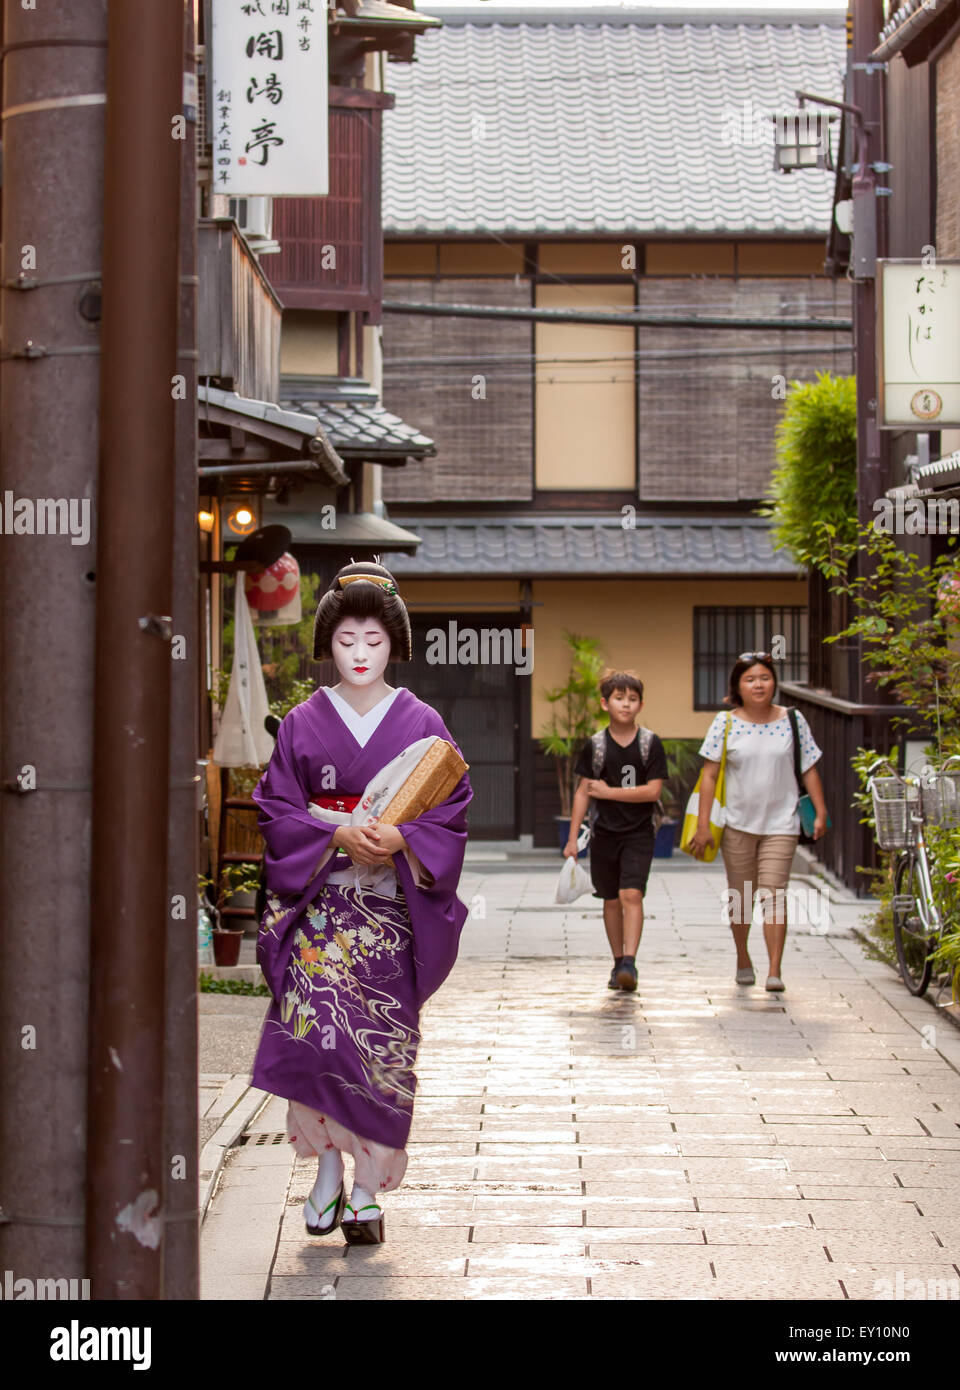 KYOTO, JAPON - 6 juillet 2015 : Geisha sur un moyen de sa soirée de rendez-vous dans le quartier traditionnel de Gion à Kyoto, au Japon. Banque D'Images